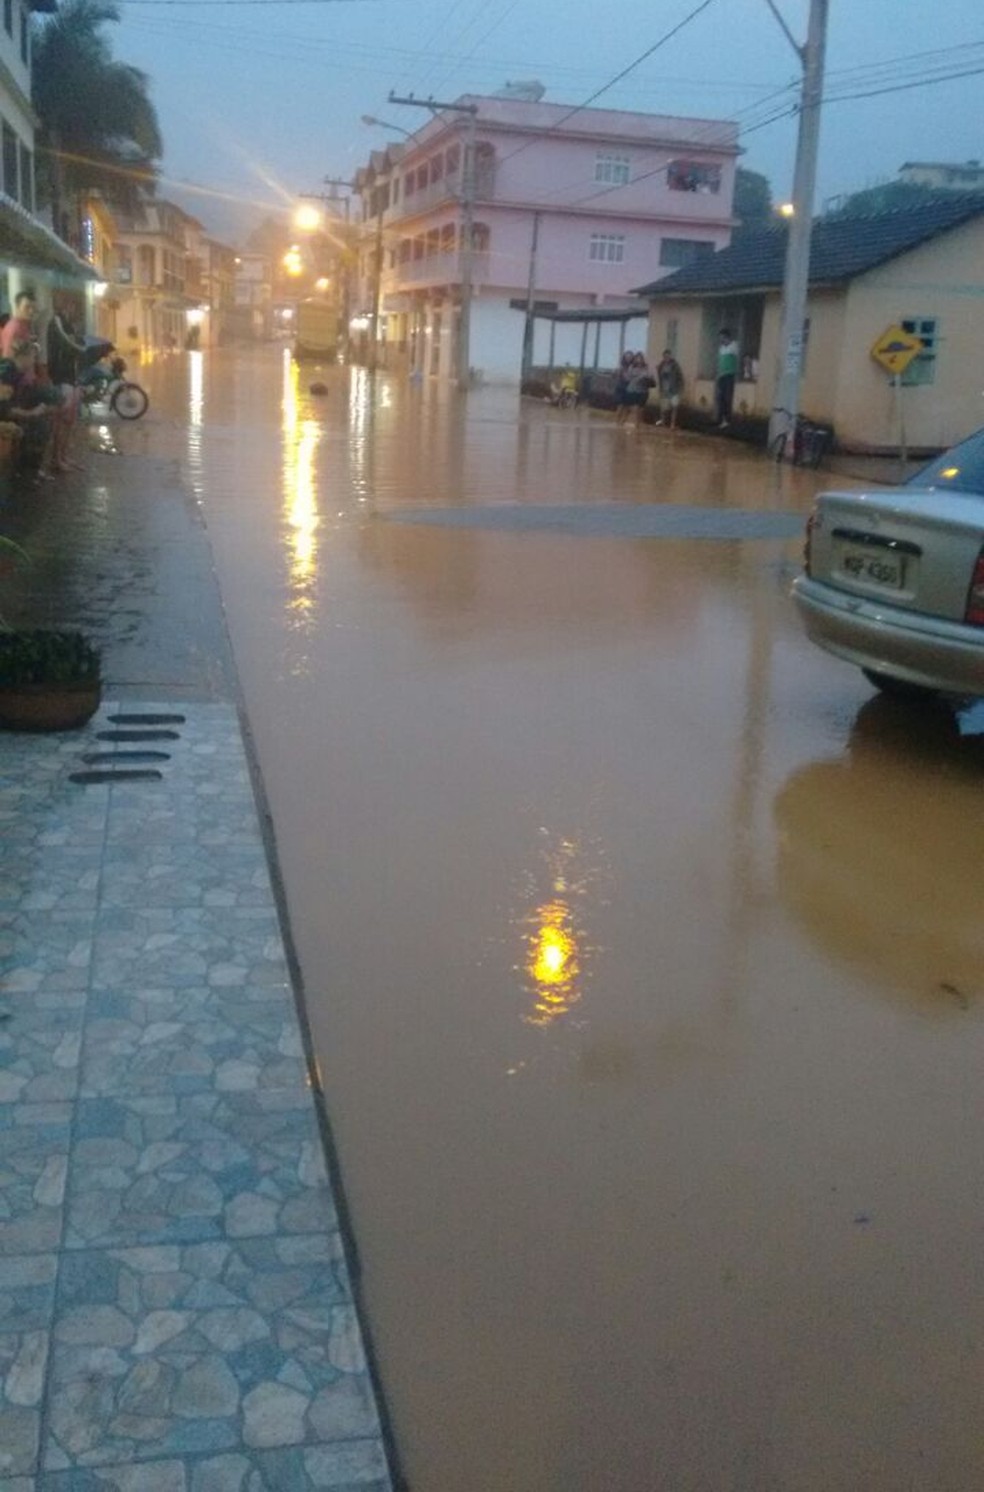 whatsapp image 2017 12 05 at 19.32.09 1  - Nível do rio sobe e comerciantes precisam interditar rua alagada em Santa Maria de Jetibá, ES